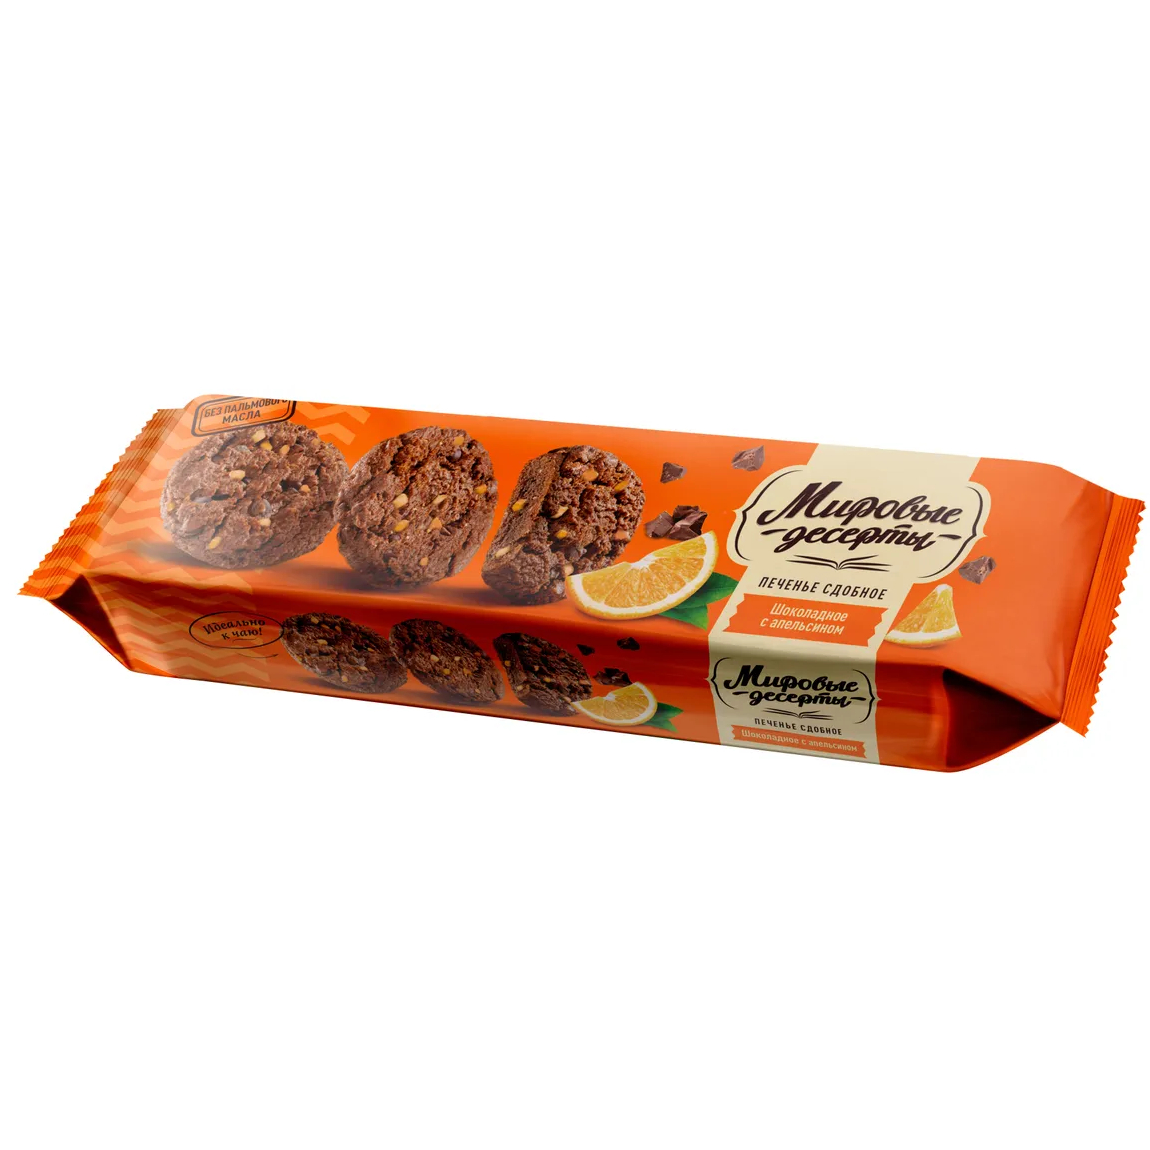 Печенье сдобное Брянконфи шоколадное с апельсином, 170 г печенье сдобное kellogg s гранола с шоколадом и апельсином 150 г